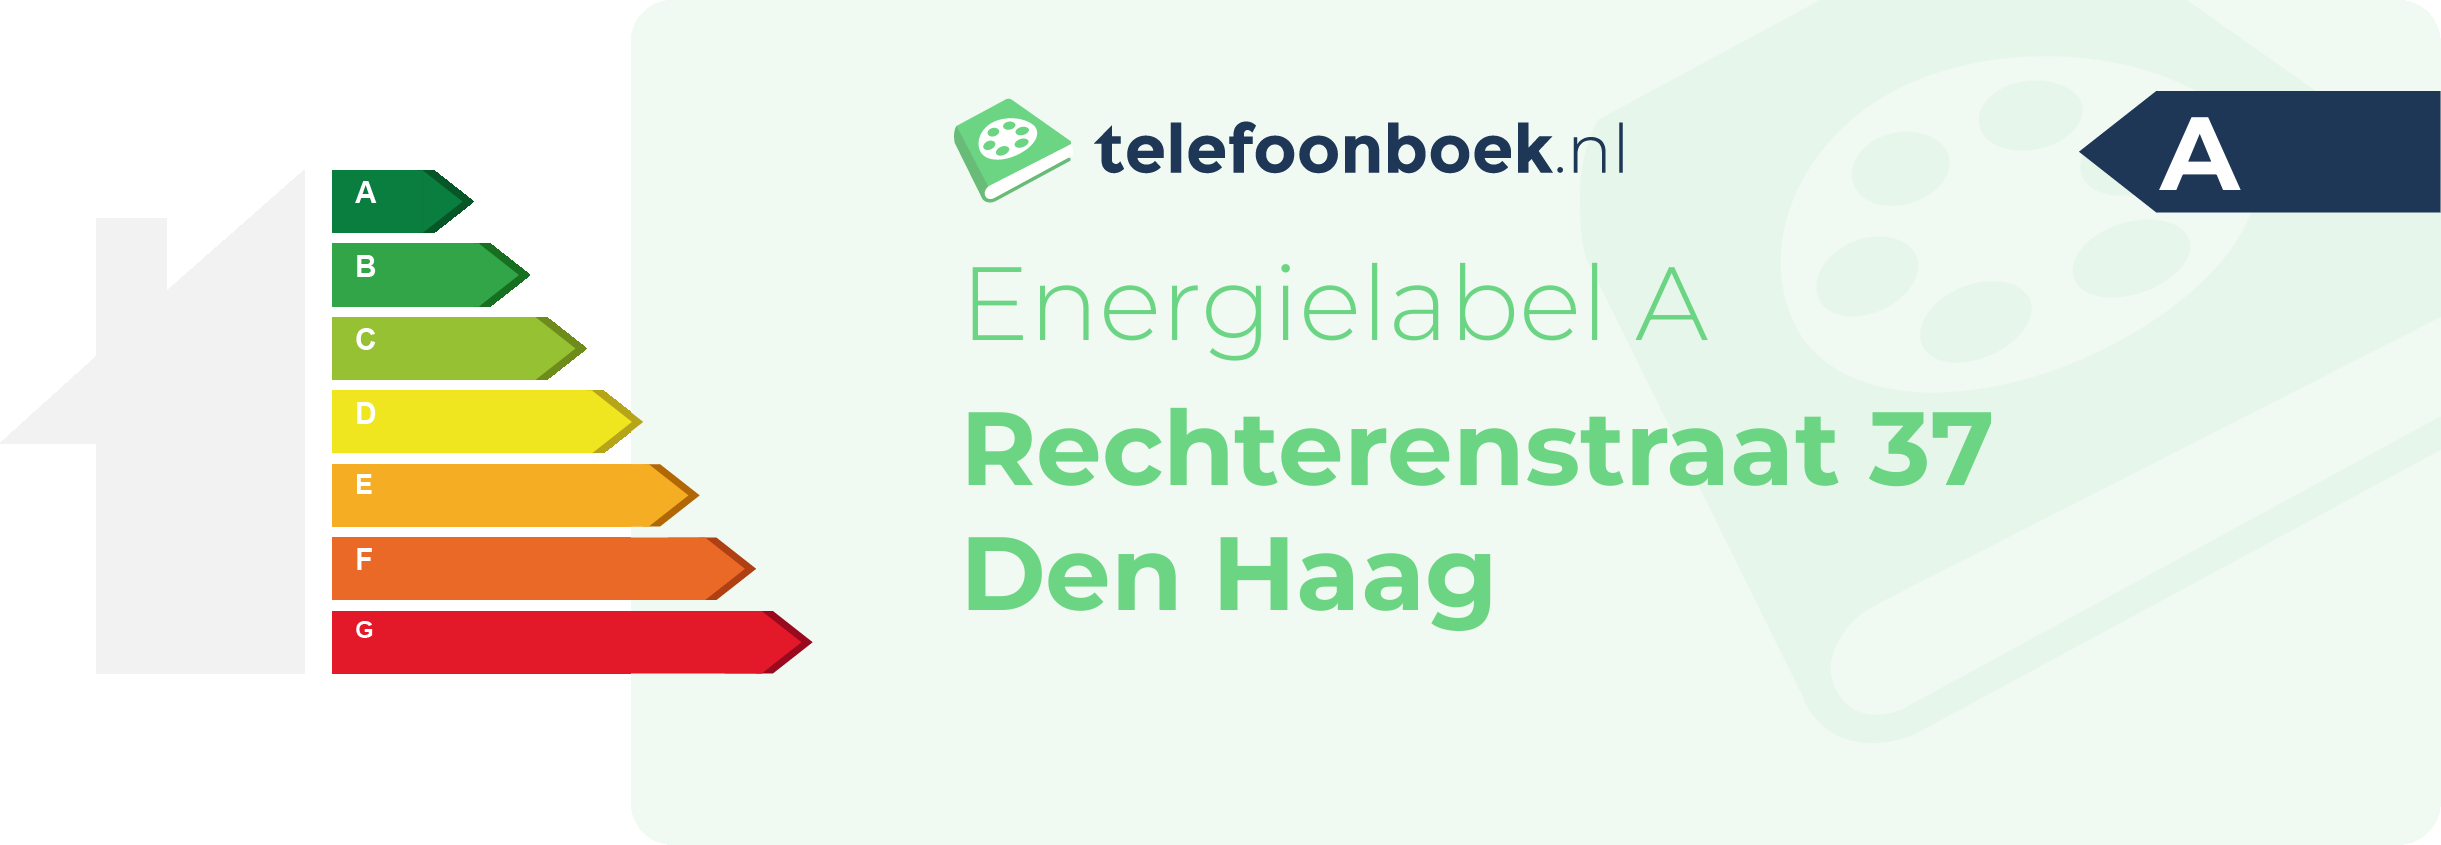 Energielabel Rechterenstraat 37 Den Haag